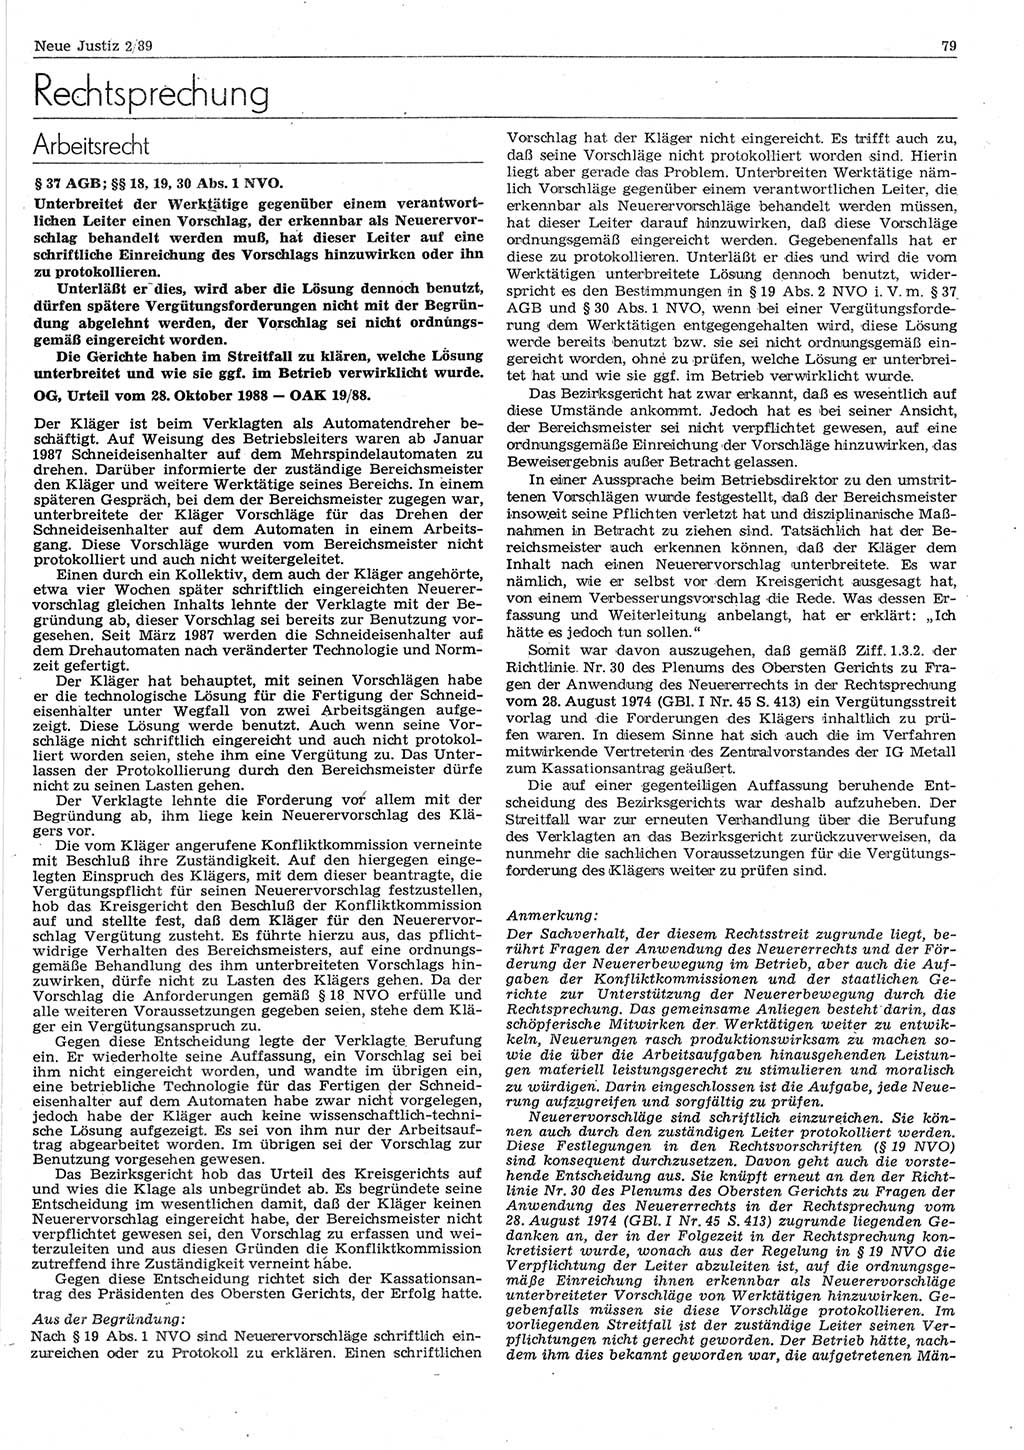 Neue Justiz (NJ), Zeitschrift für sozialistisches Recht und Gesetzlichkeit [Deutsche Demokratische Republik (DDR)], 43. Jahrgang 1989, Seite 79 (NJ DDR 1989, S. 79)